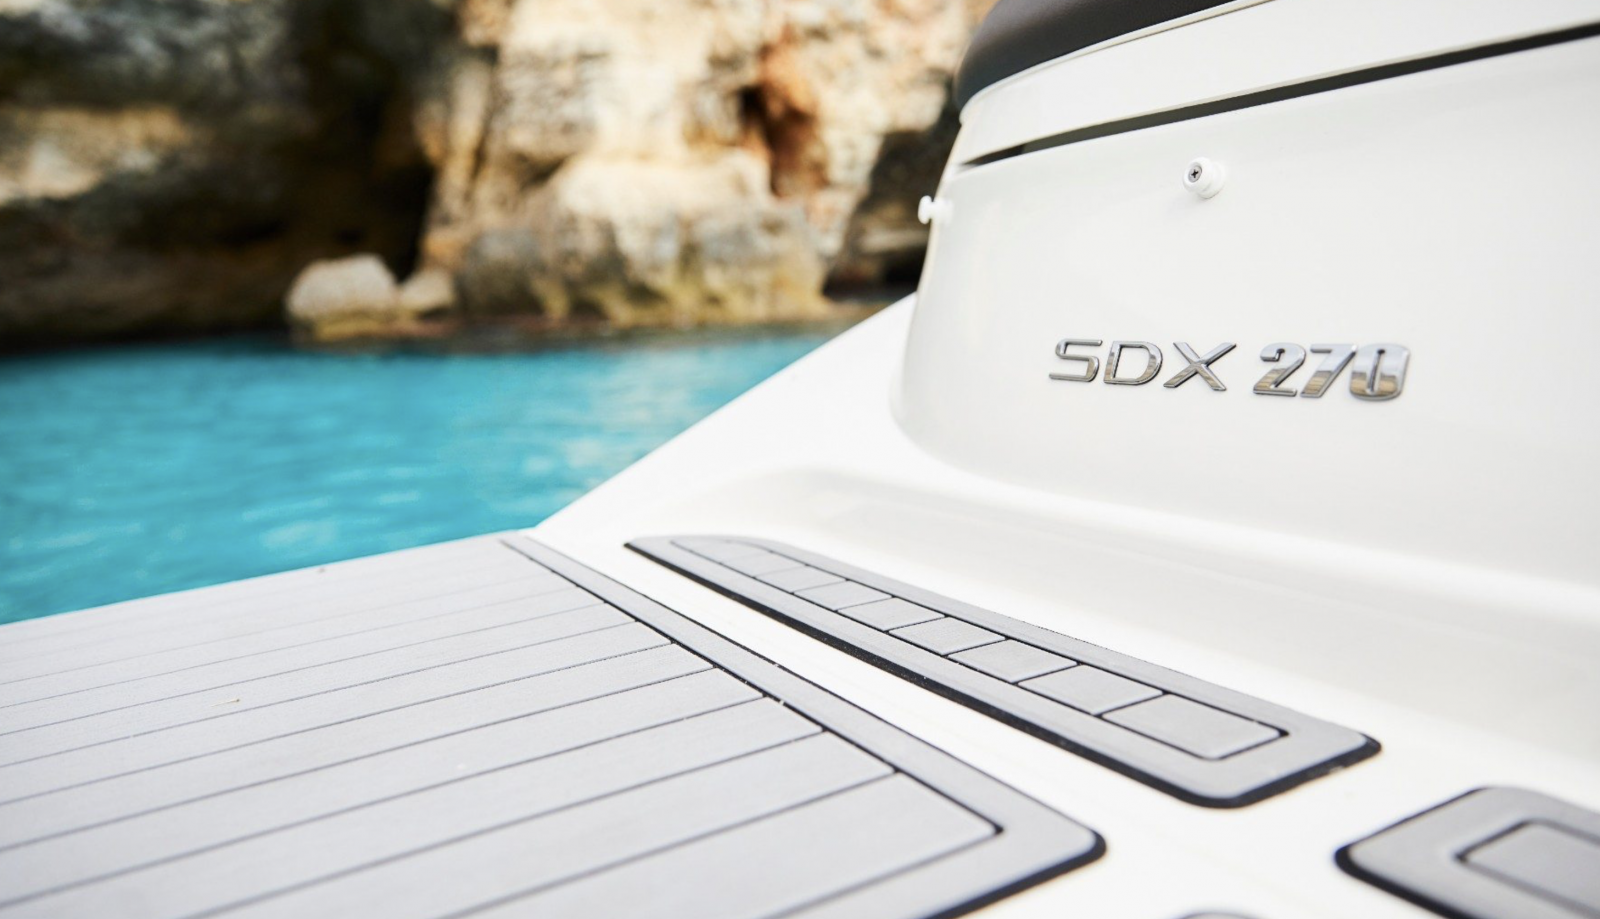 Sea Ray SDX 270